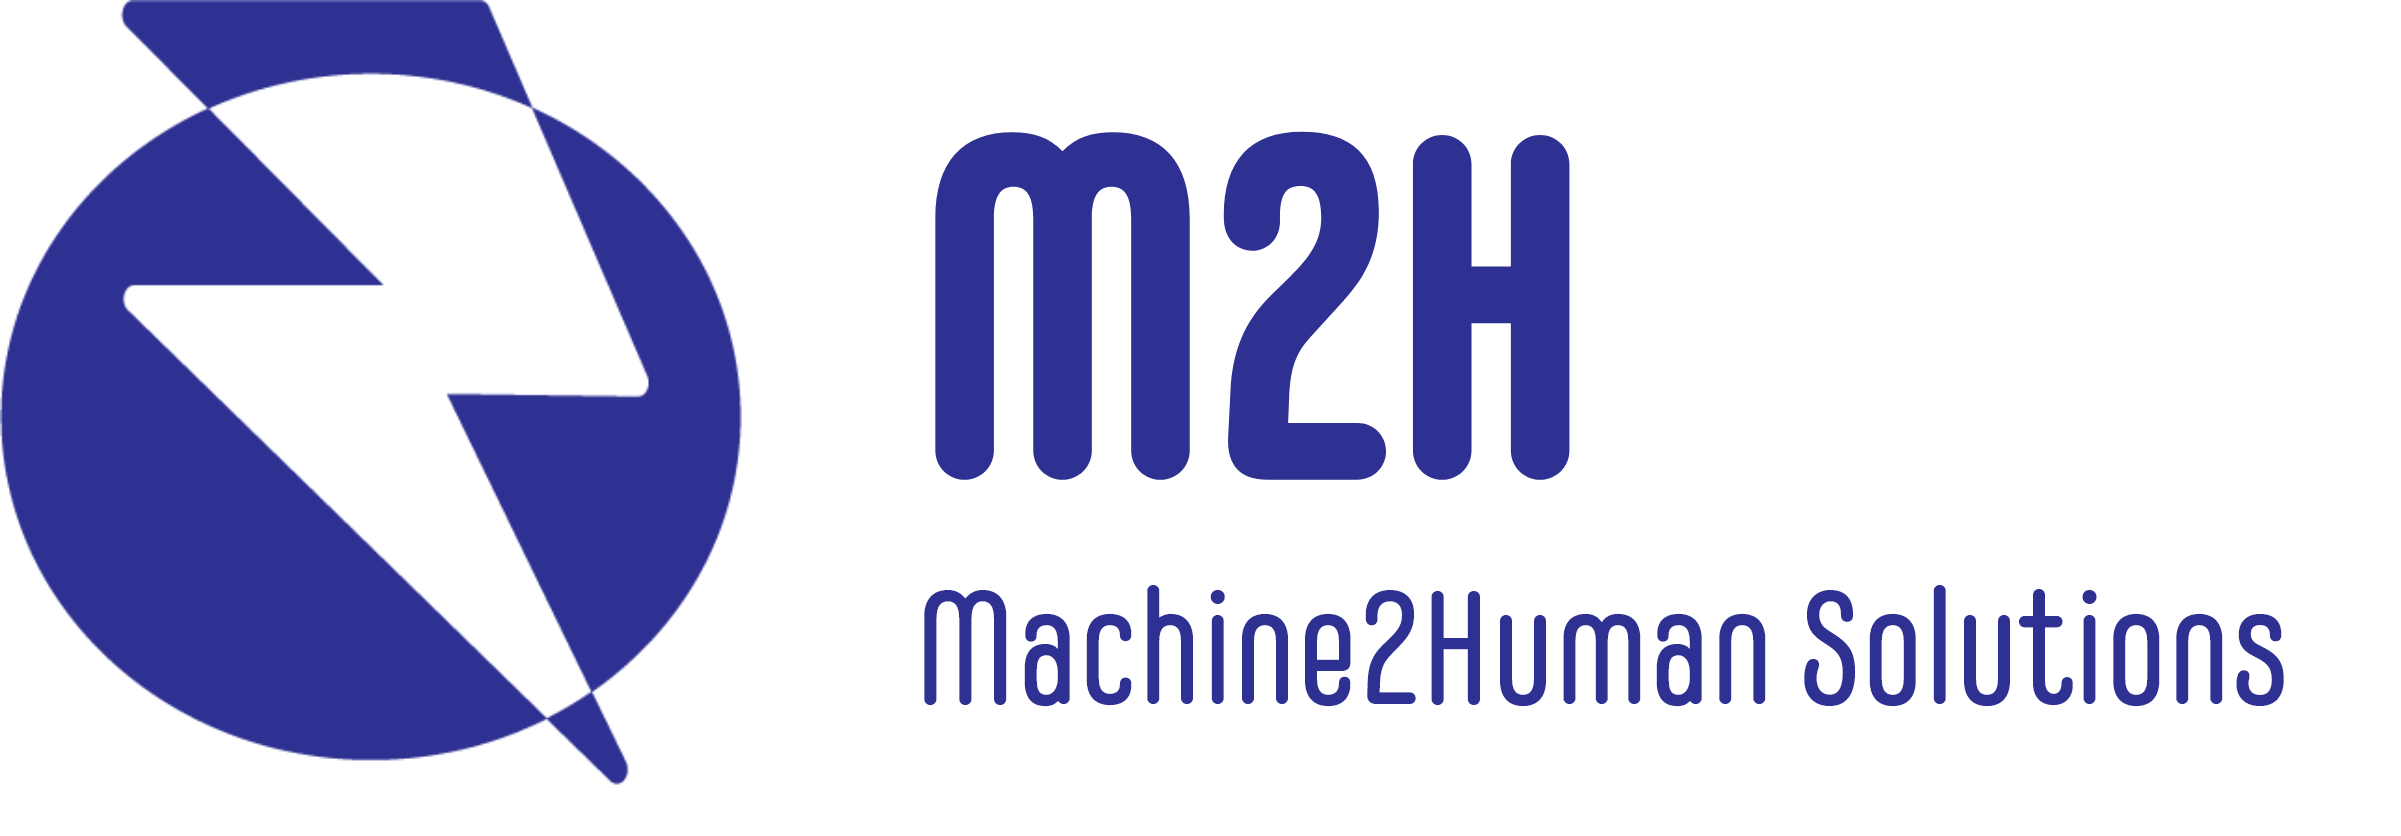 Machine2Human Solutions / startup von Minden / Background